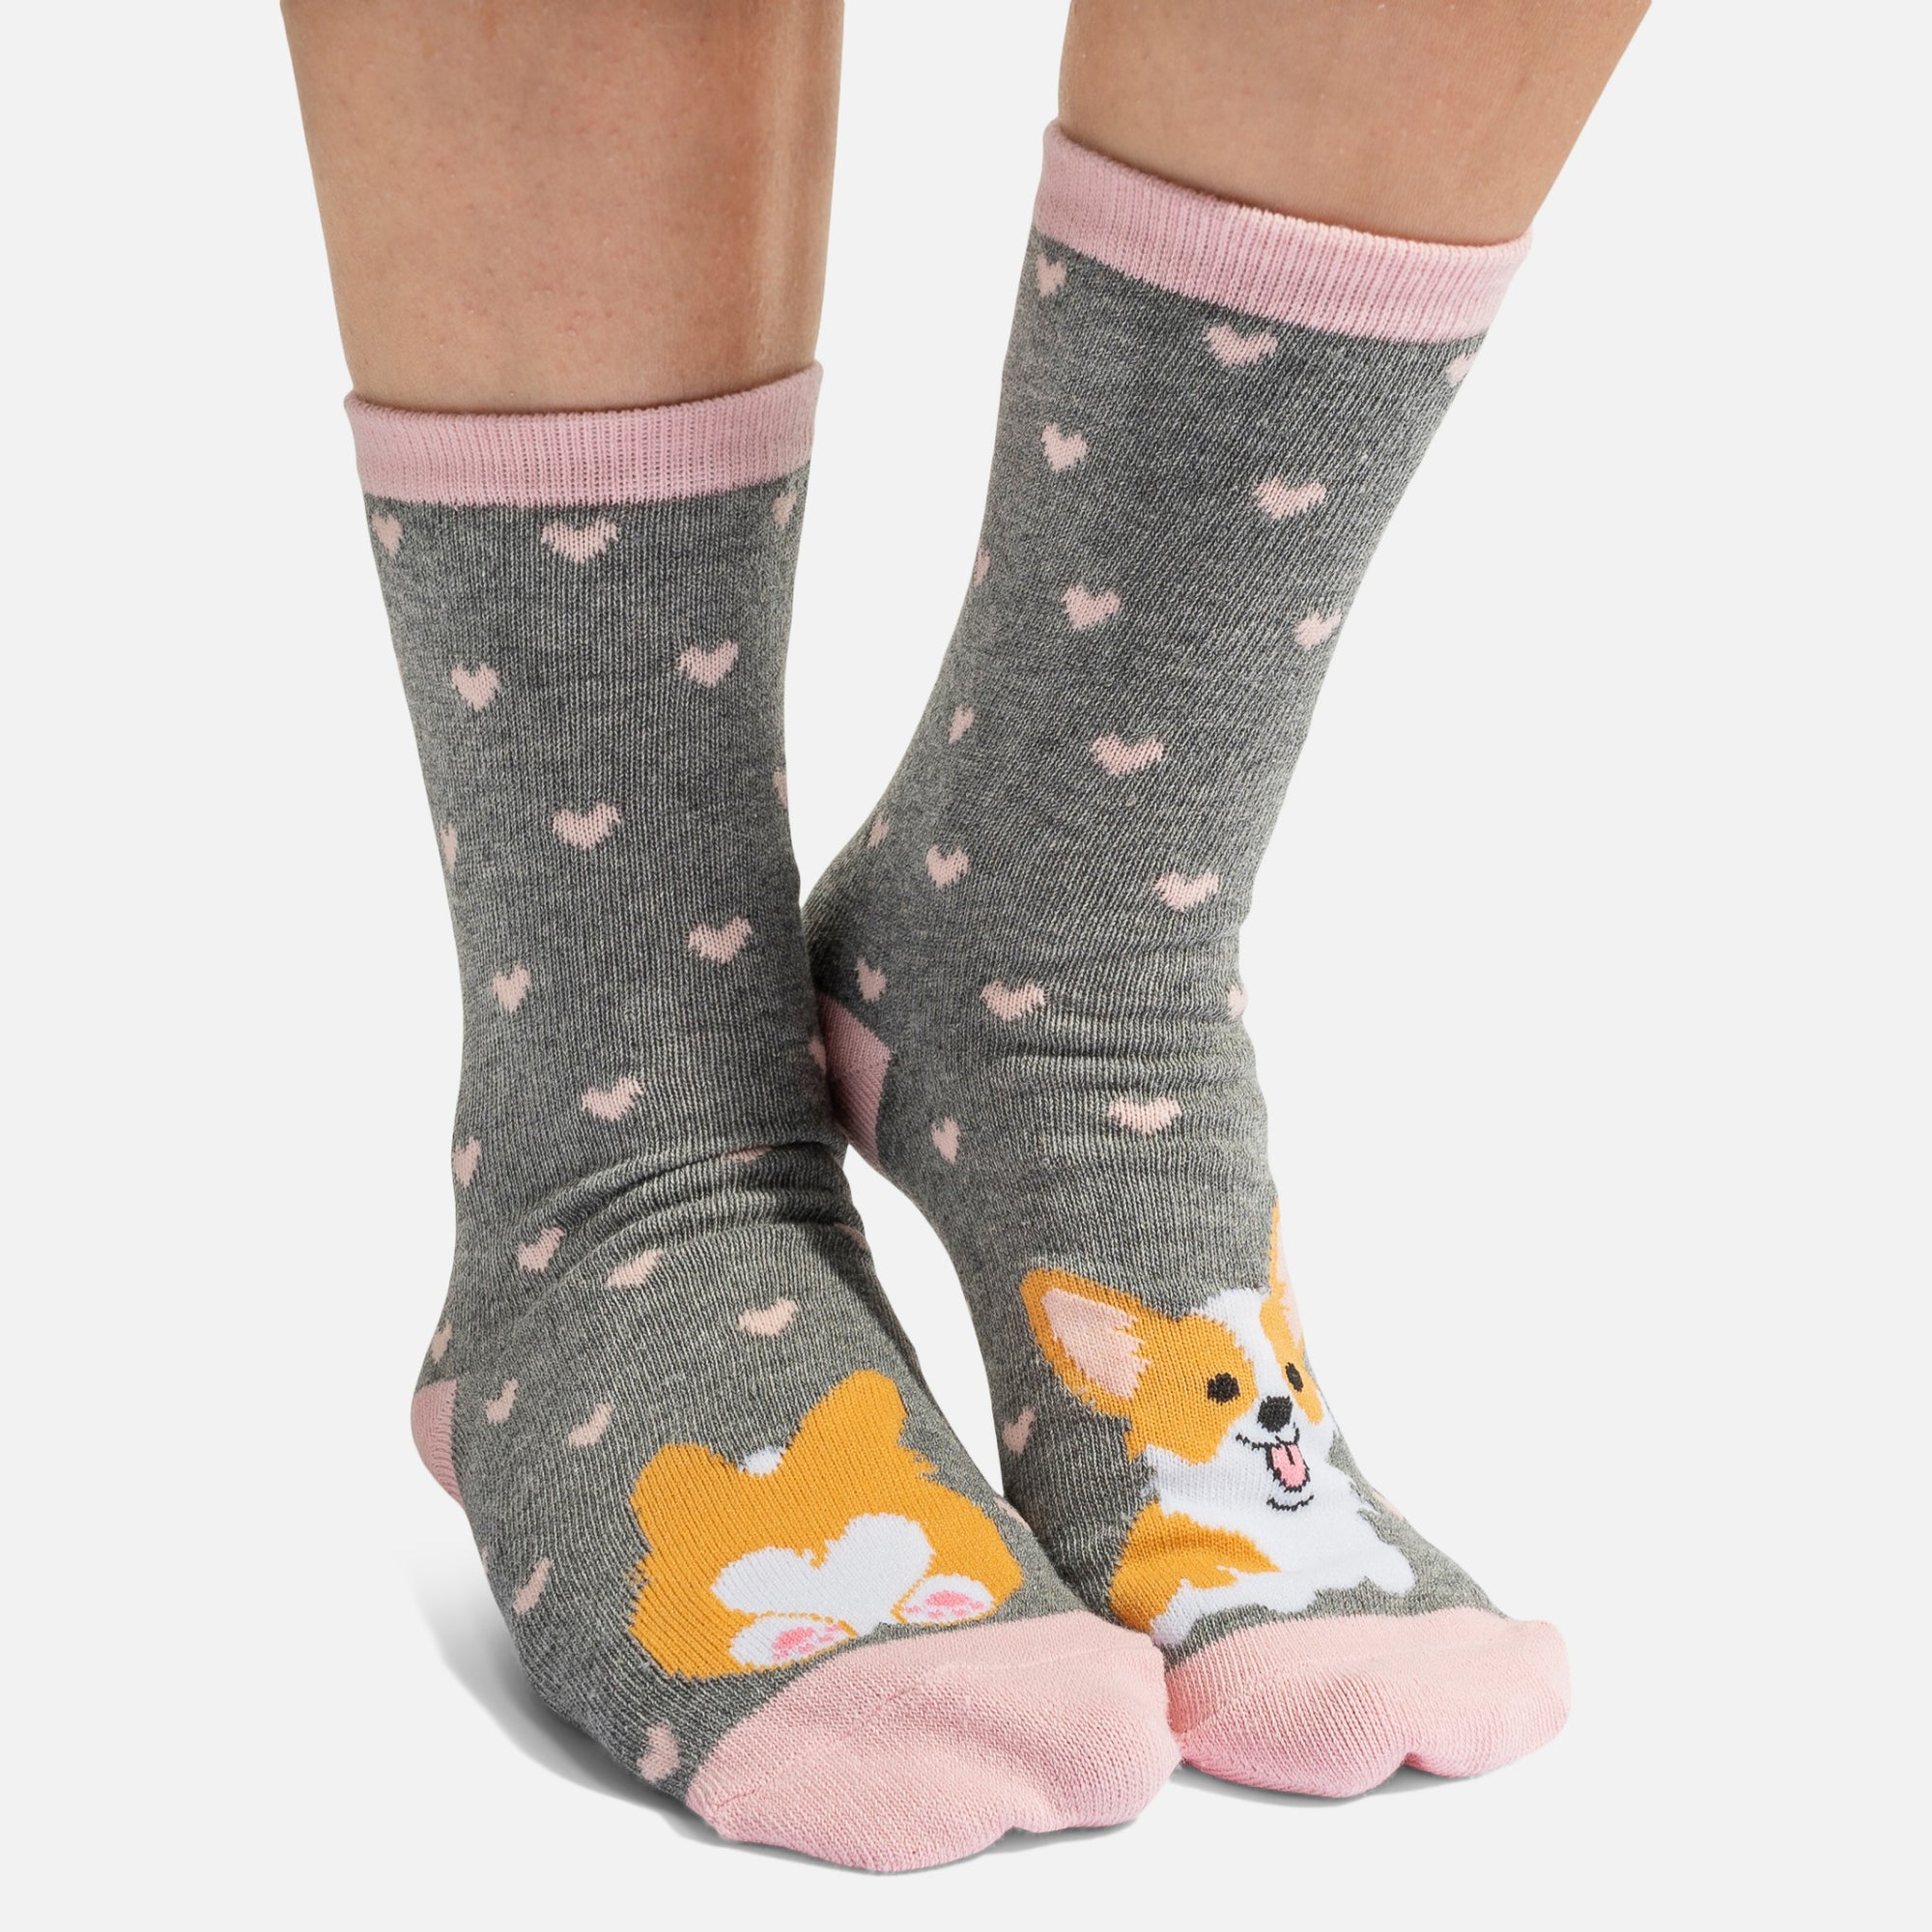 Grey socks with playful corgi